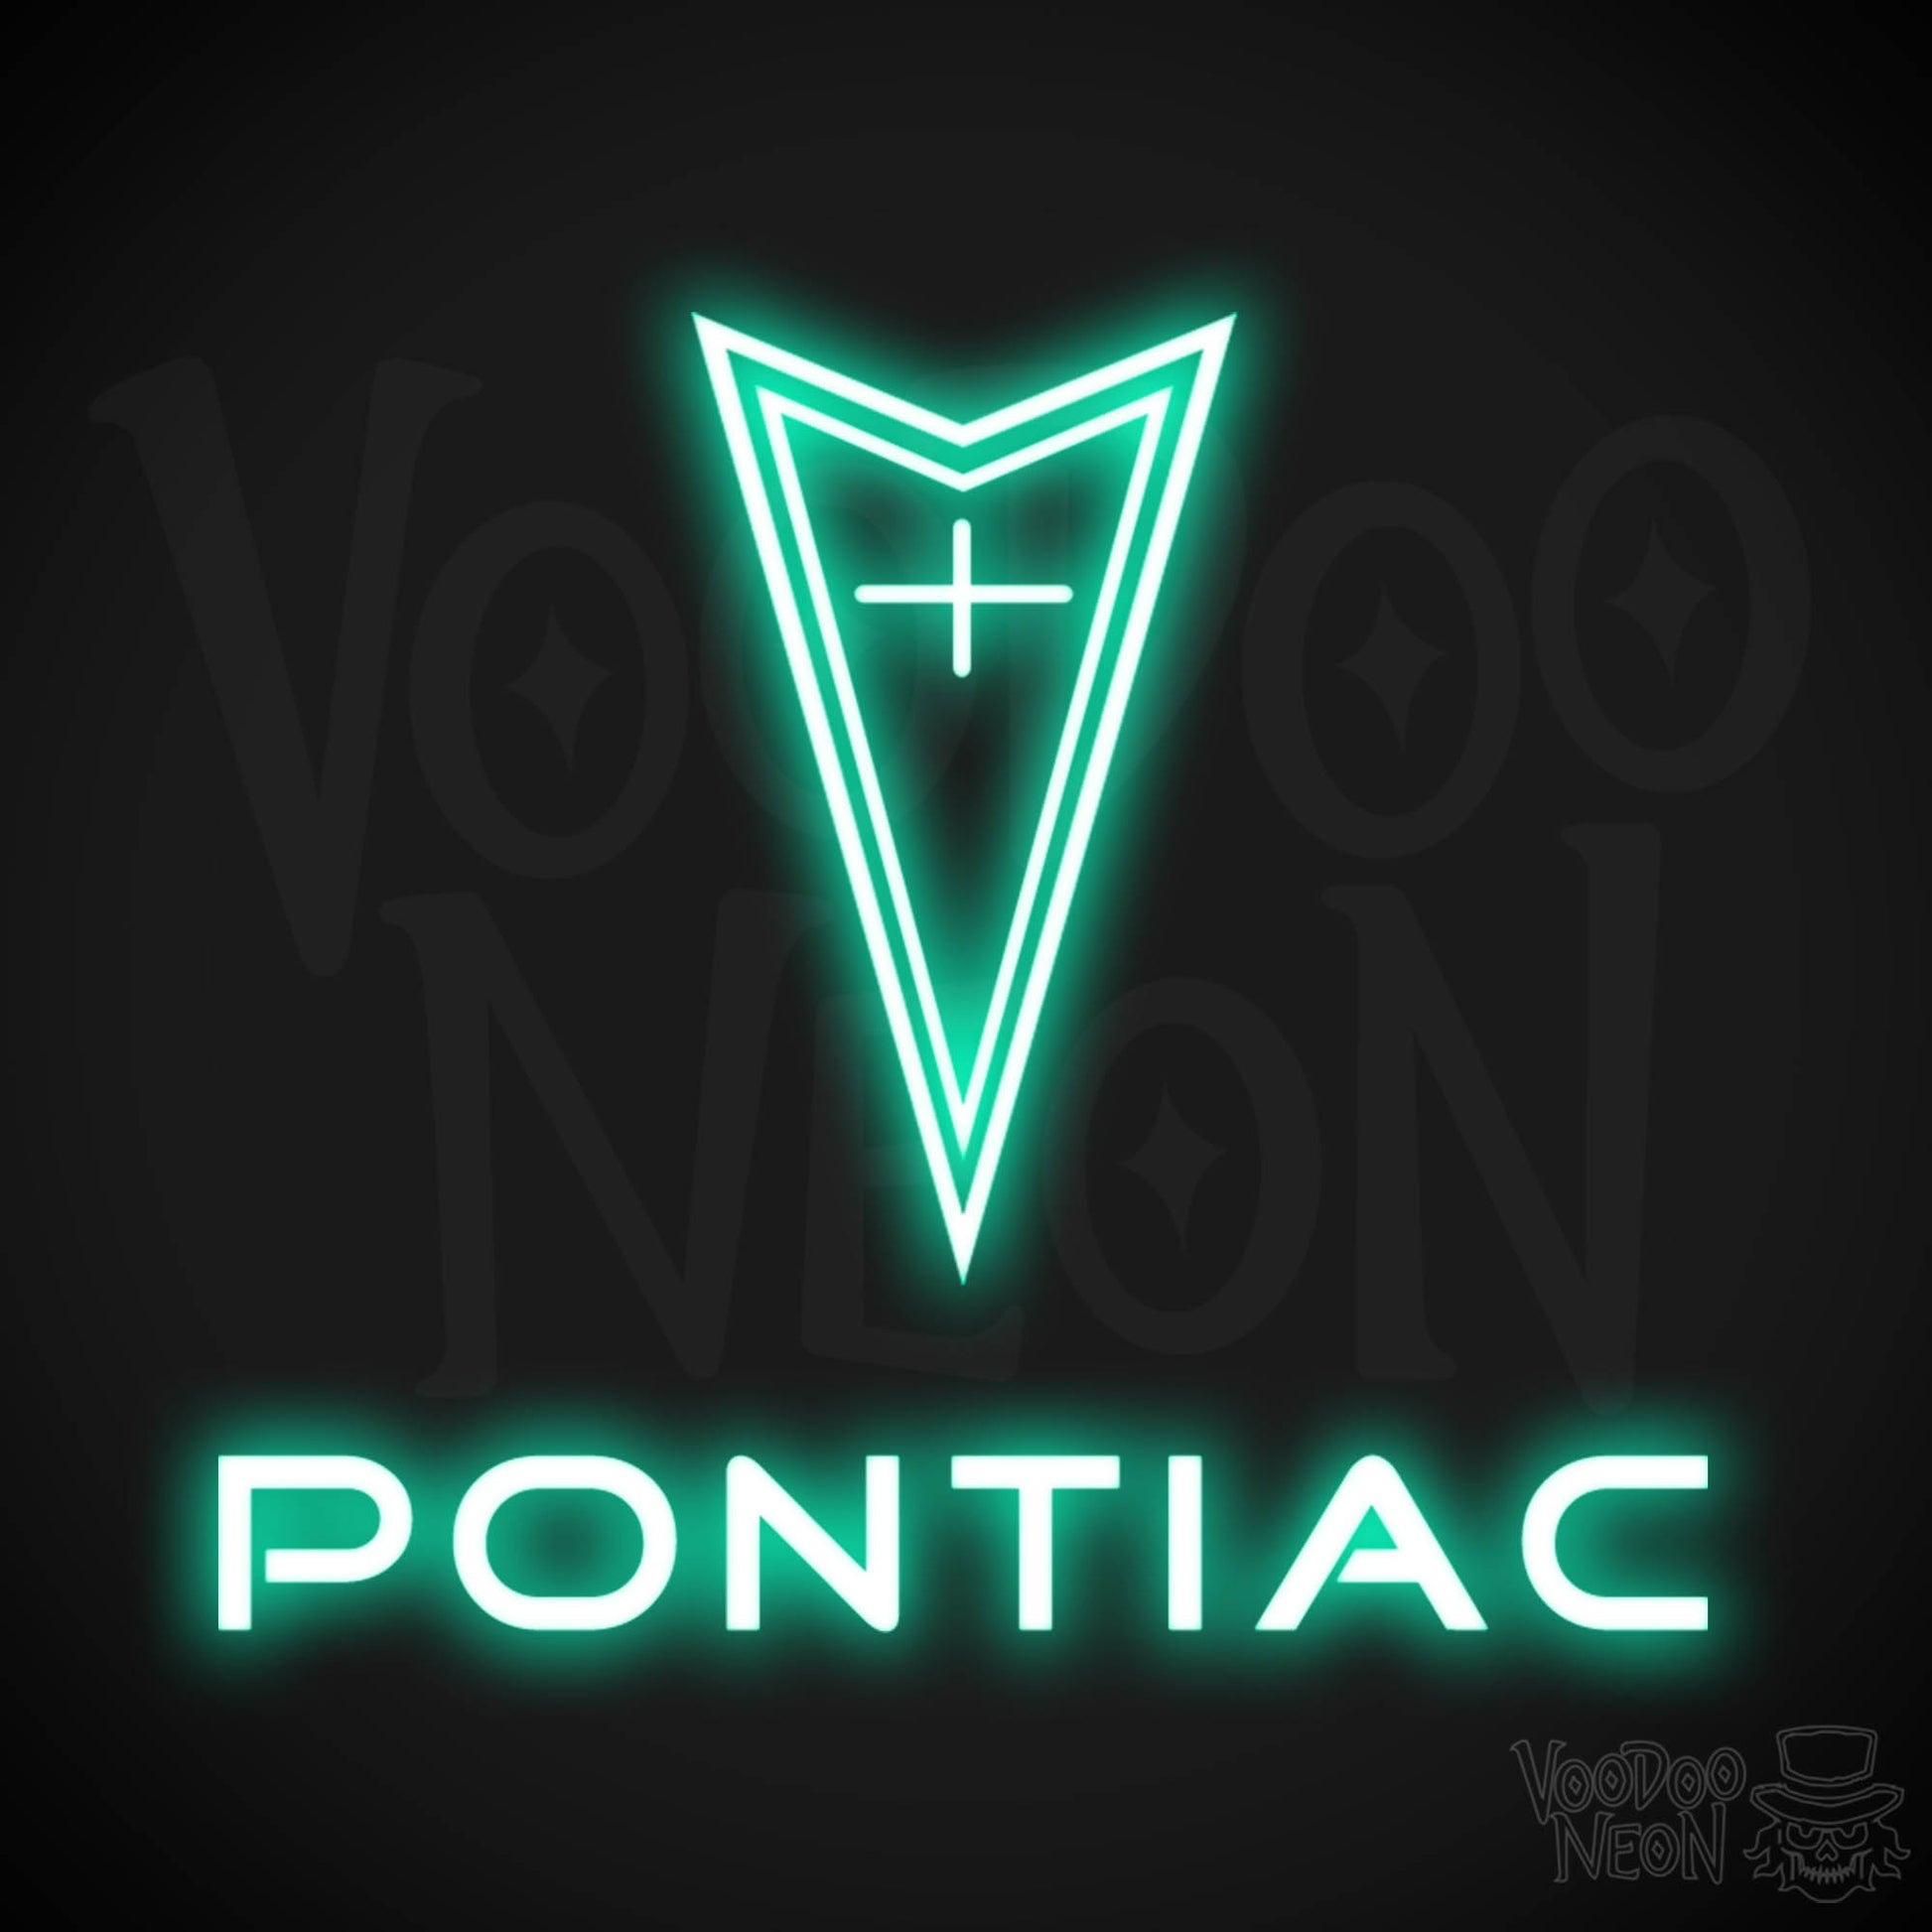 Pontiac Neon Sign - Pontiac Sign - Pontiac Decor - Wall Art - Color Light Green